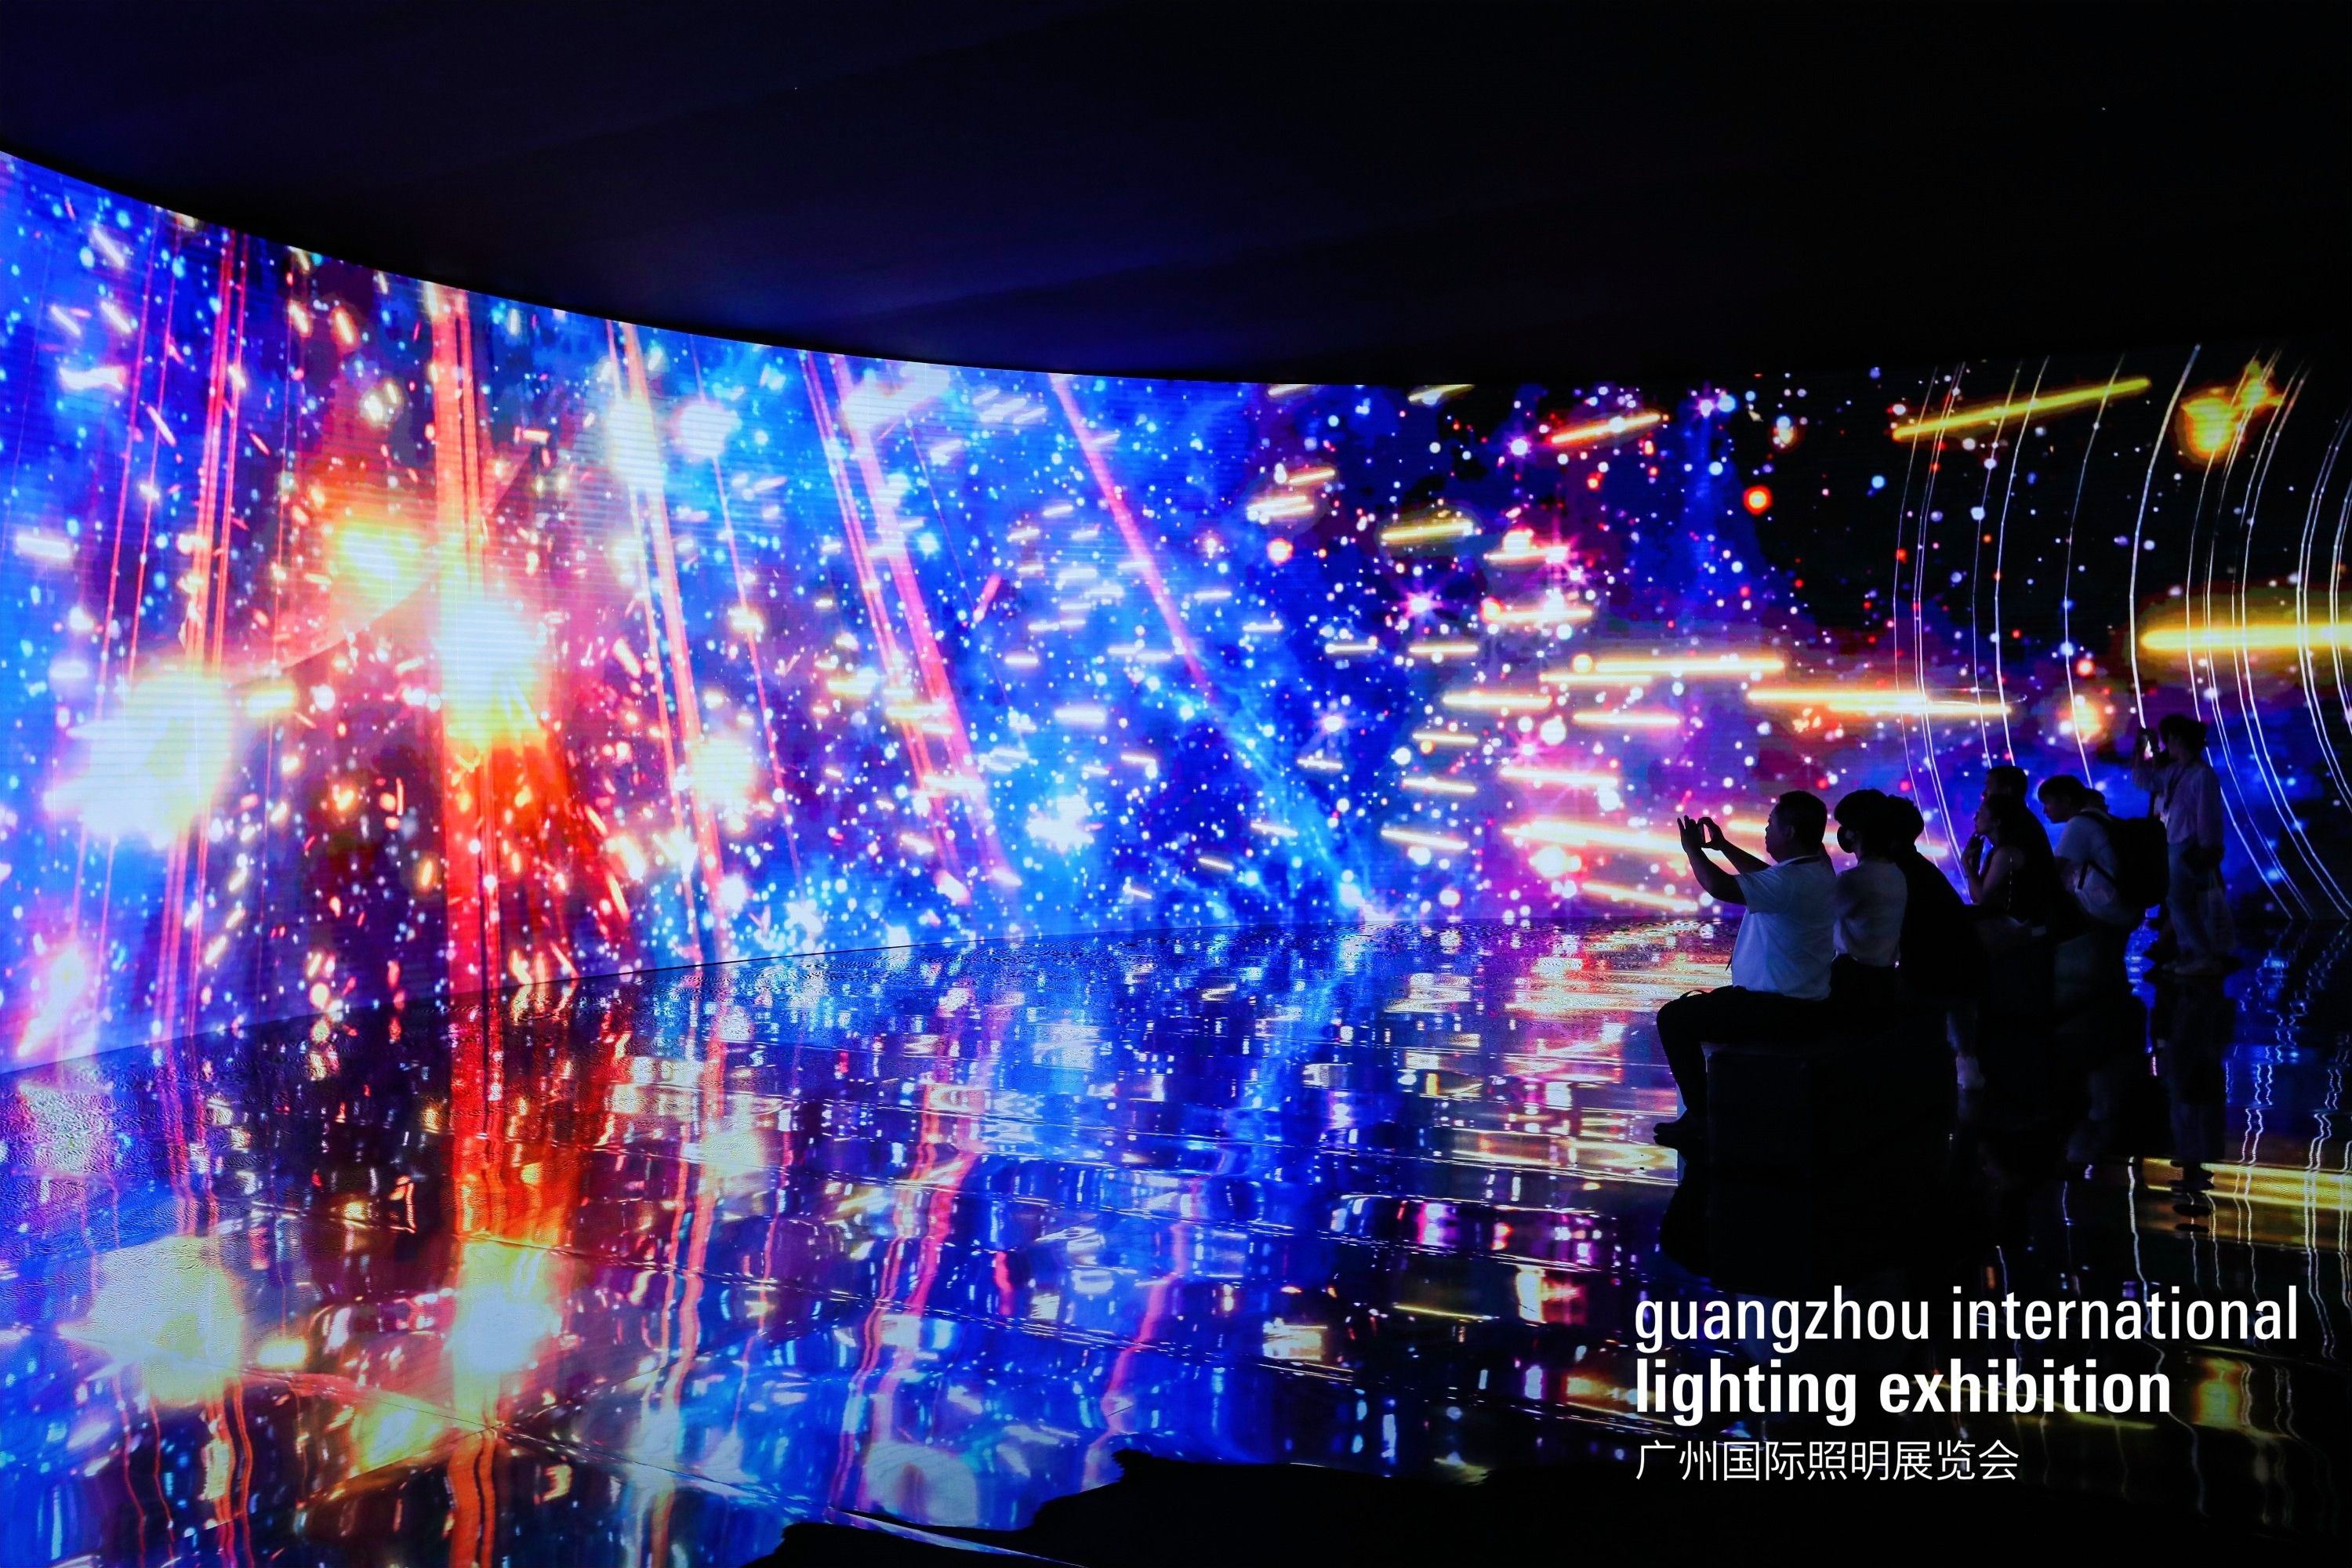 光无限——光明在前，未来可期，2024年广州国际照明展览会凝心聚力，建构“光 +”融合产业生态圈